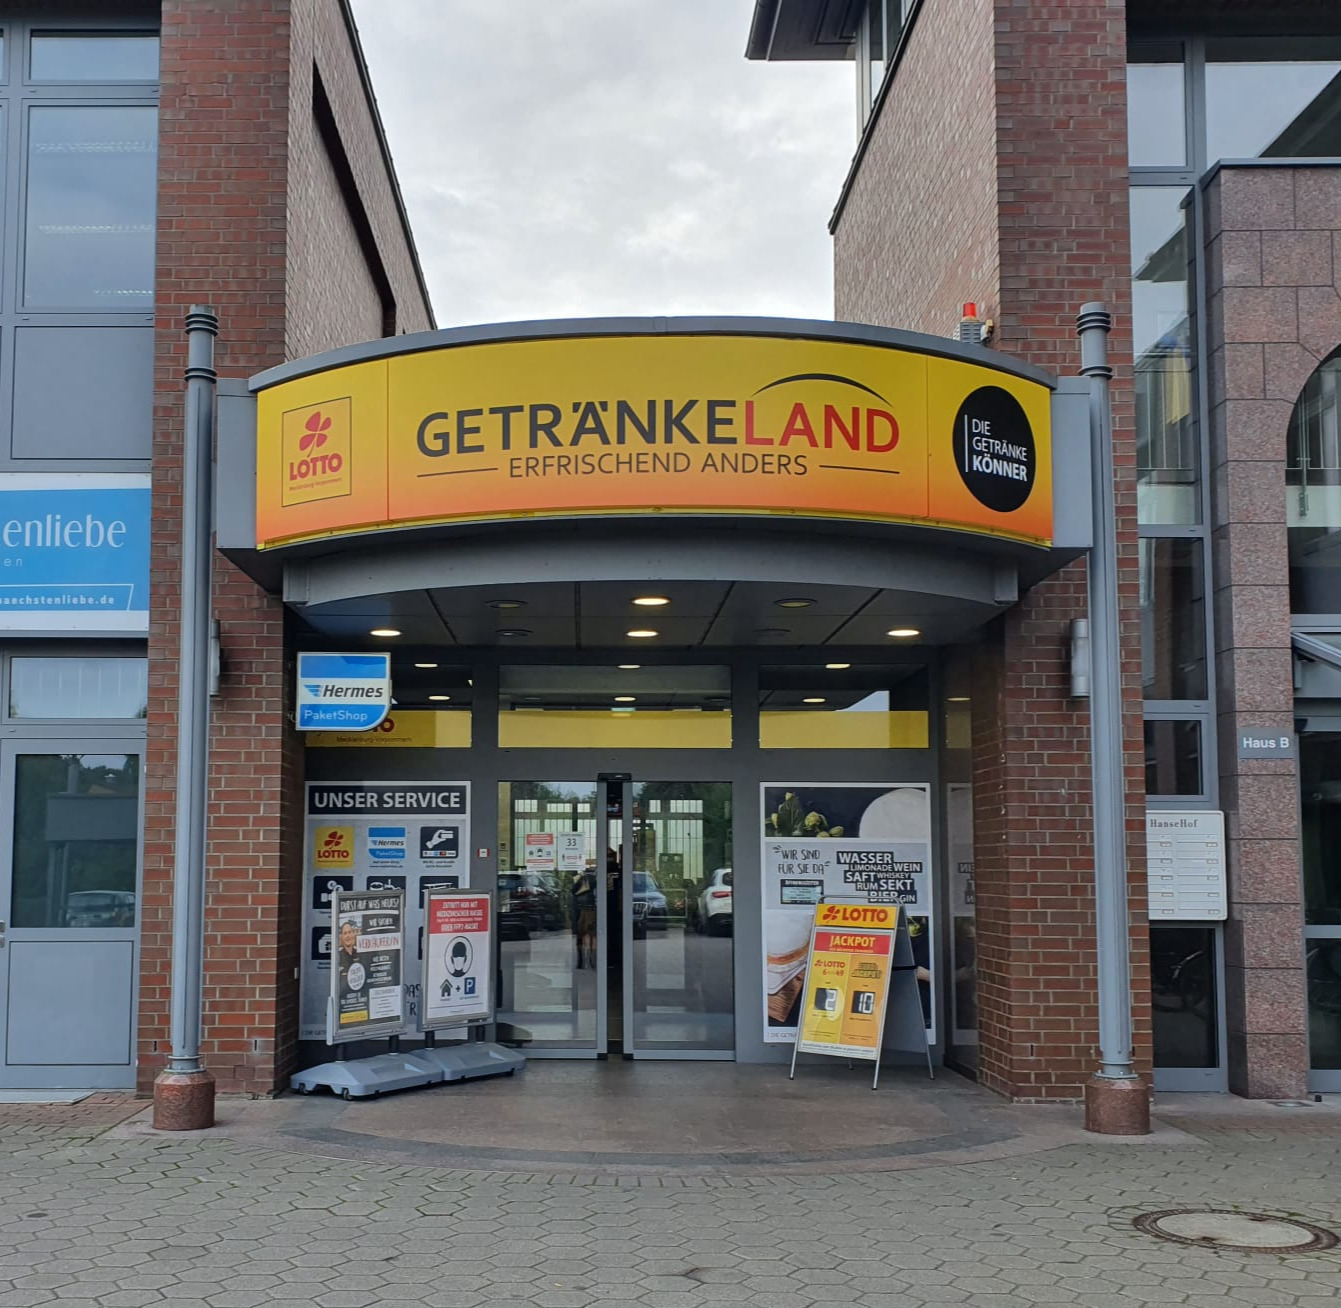 Getränkeland | DIE GETRÄNKEKÖNNER, Alt Bartelsdorfer Straße 1 in Rostock